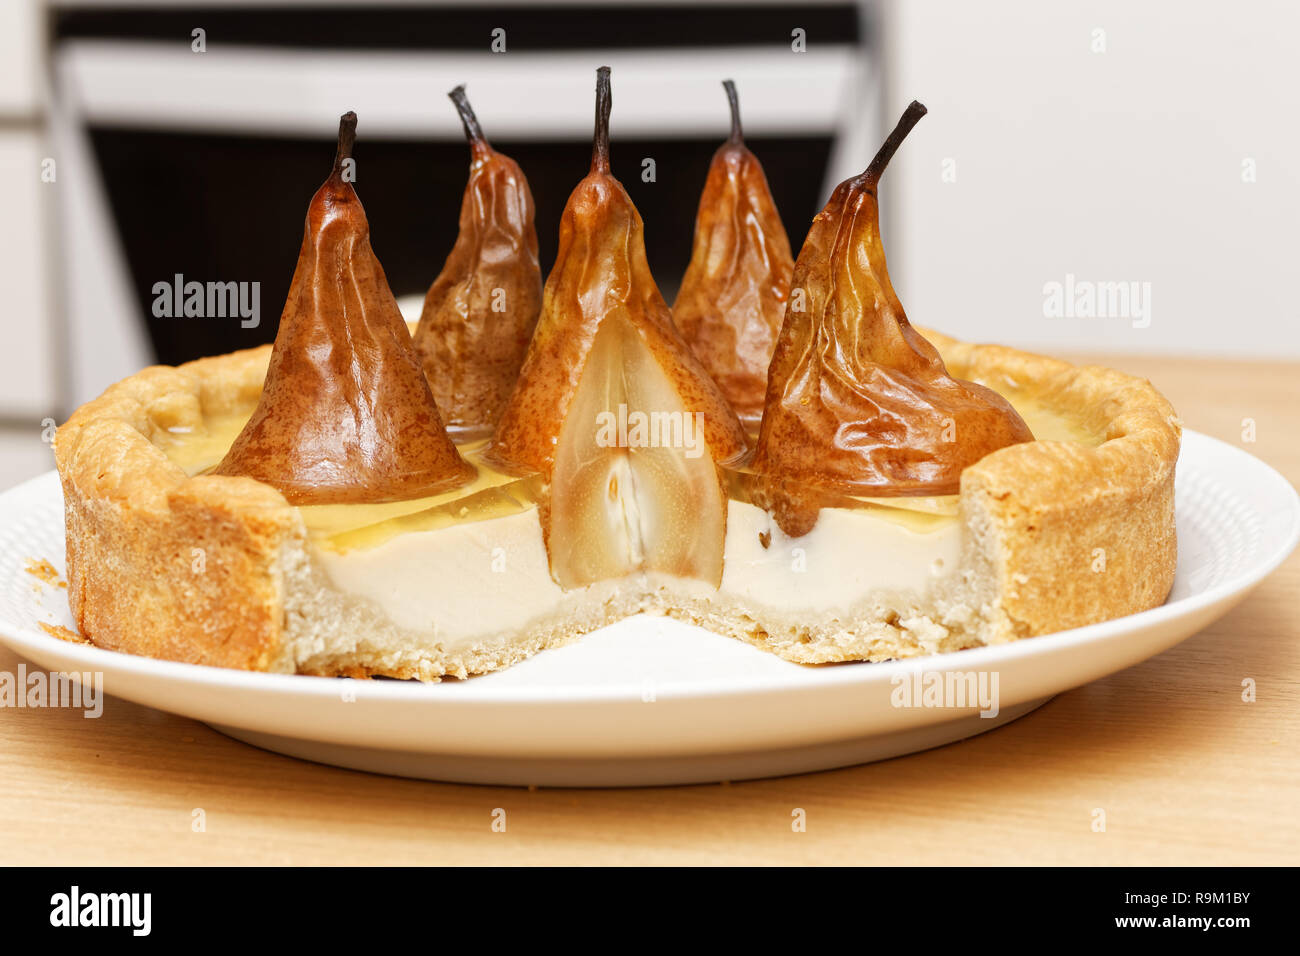 Pear-Kuchen mit Sahne Butter und Marmelade mit abgeschnitten Stücke auf hölzernen Tisch gegen verwackelte Küche Hintergrund Stockfoto